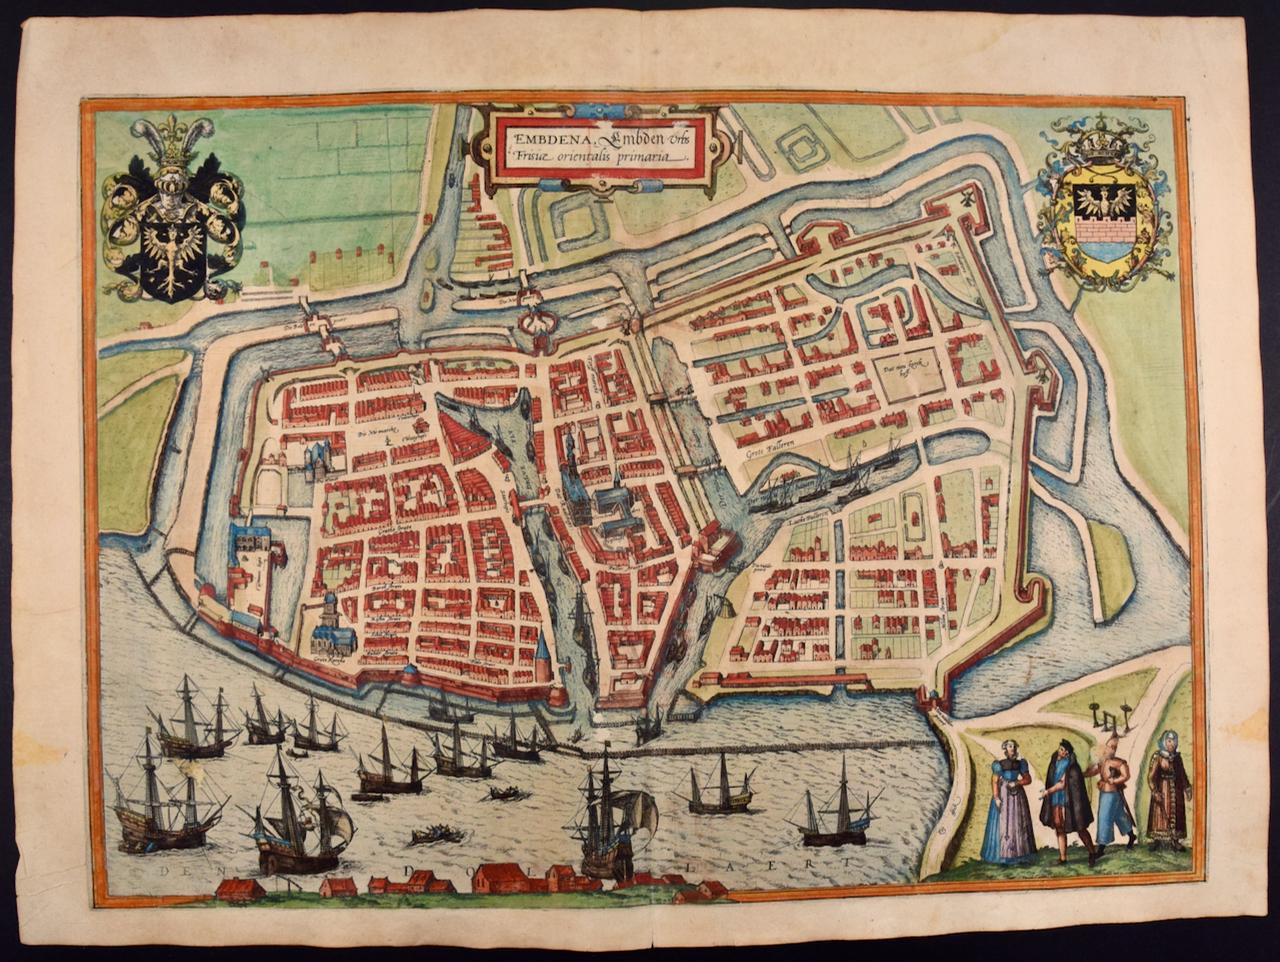  View of Emden, Allemagne : une carte du 16e siècle colorée à la main par Braun & Hogenberg